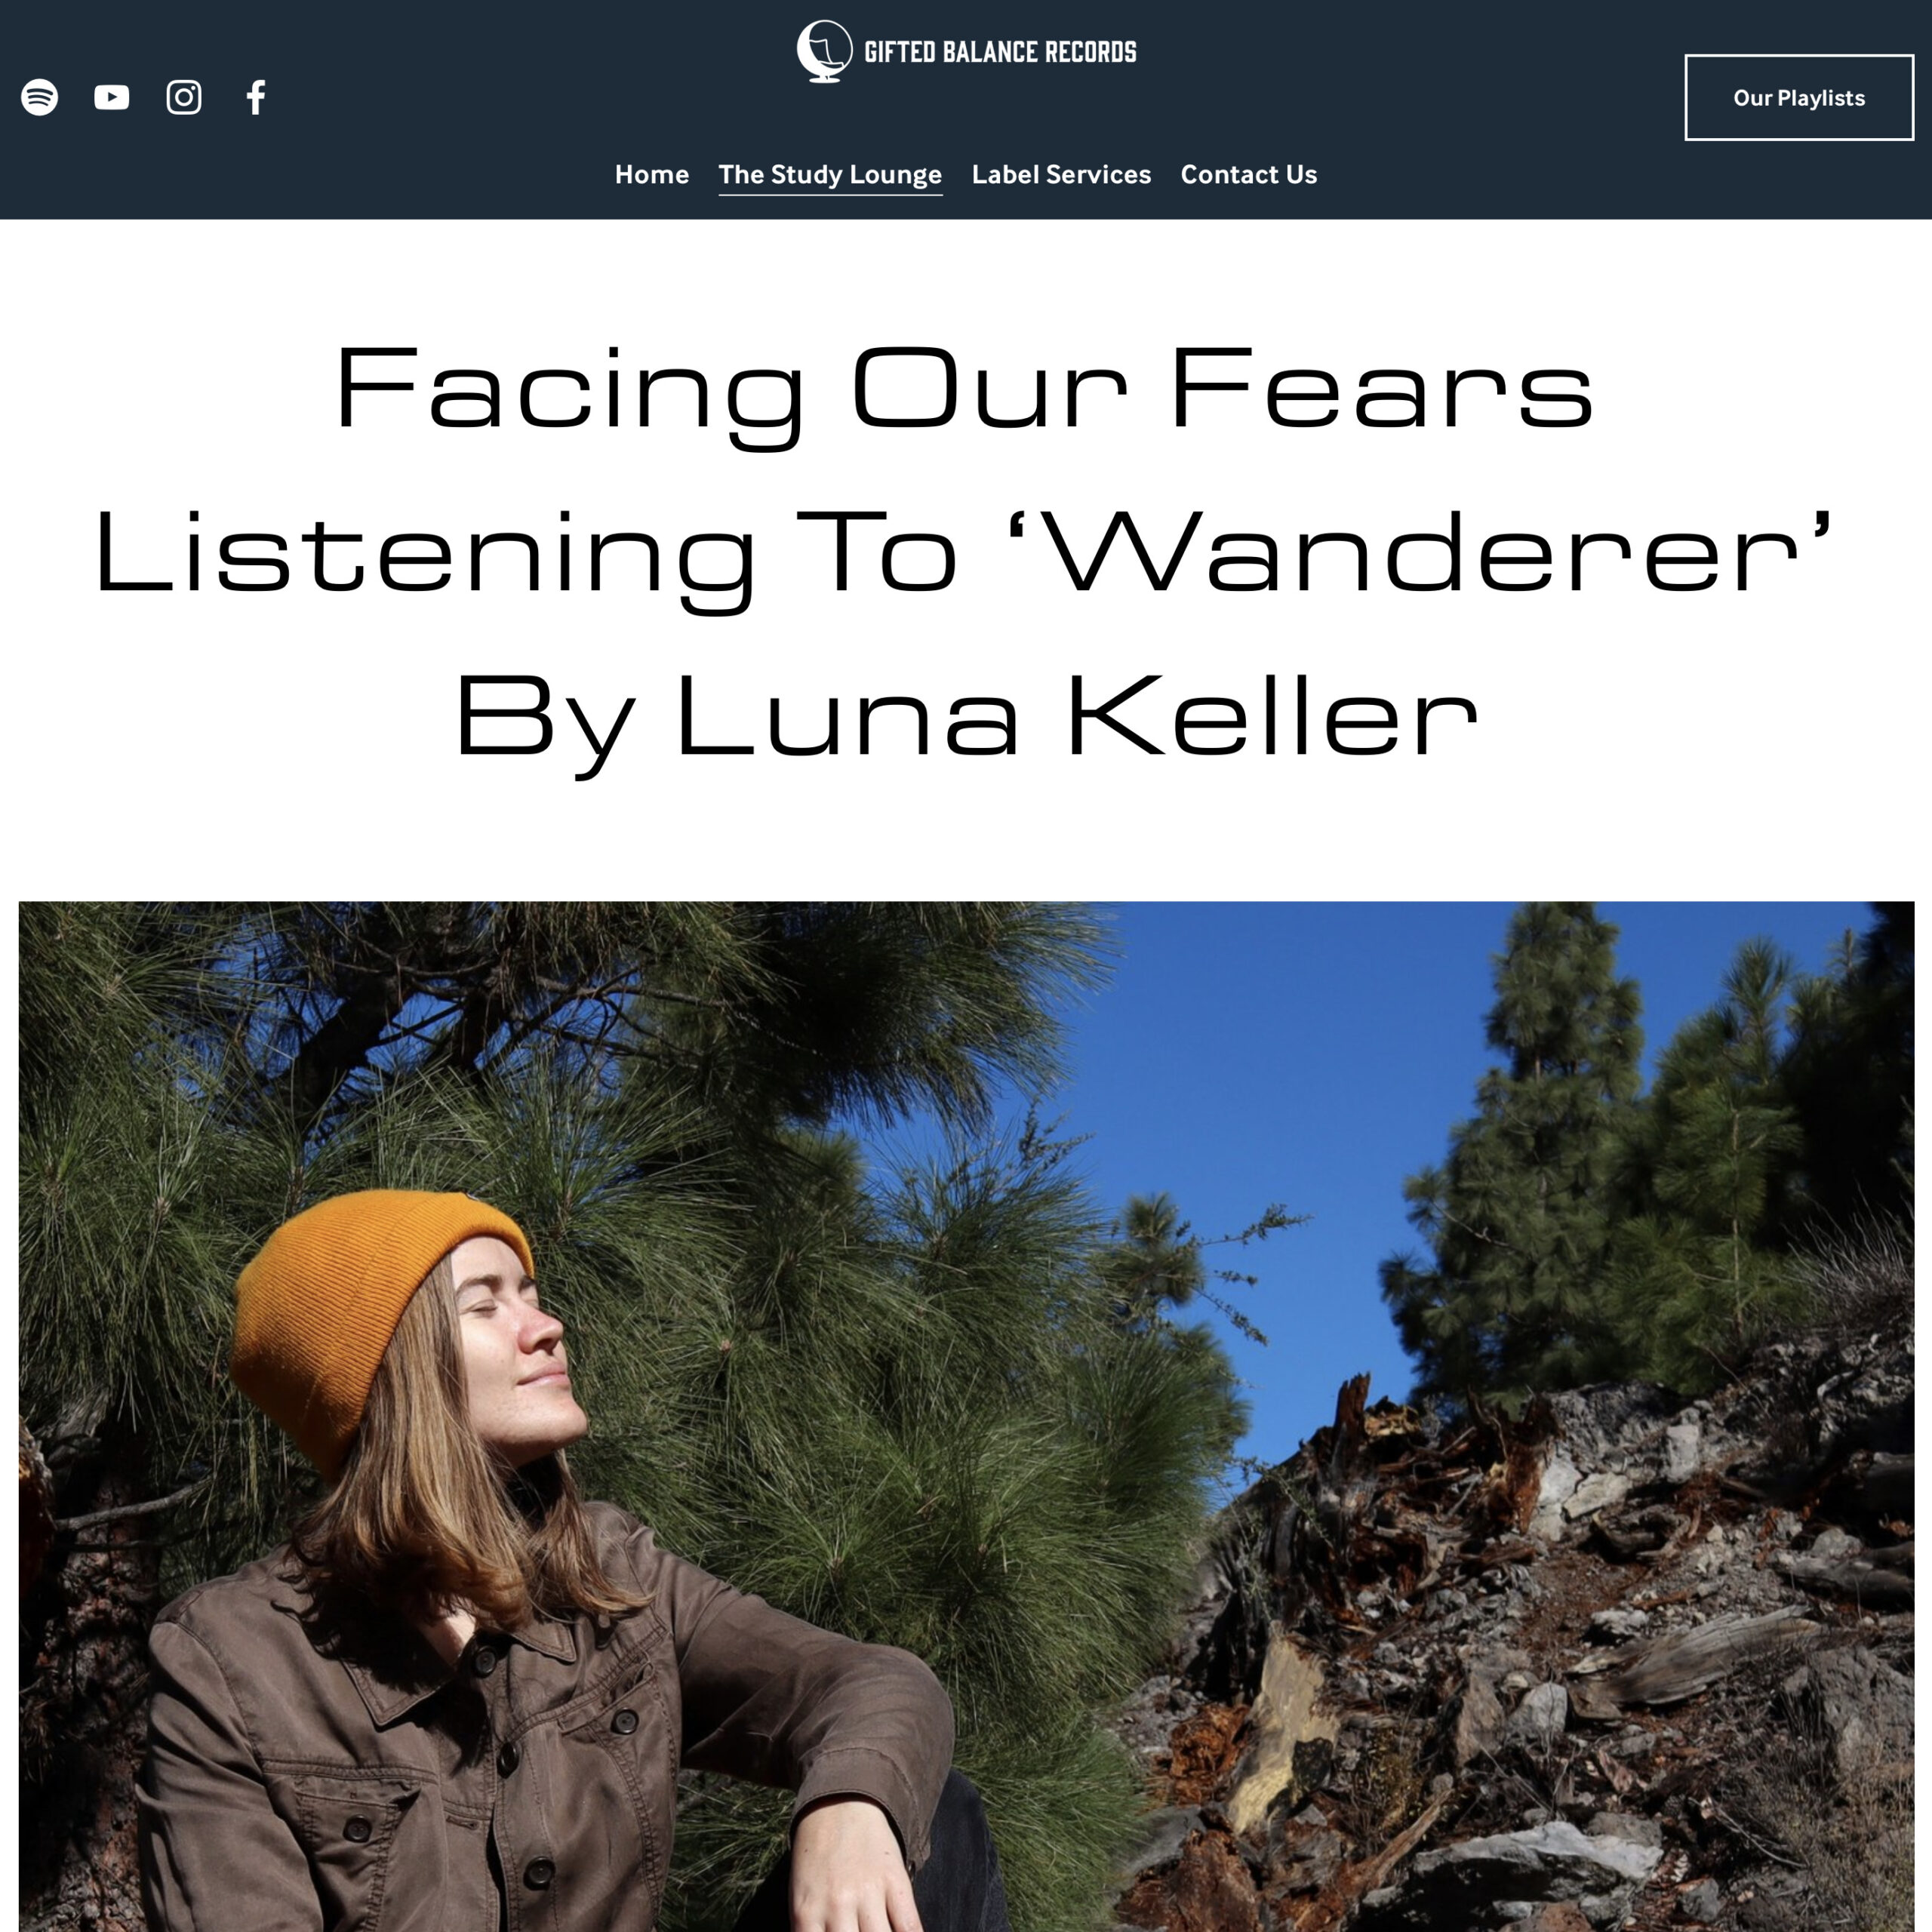 Gifted Balance Records - Wanderer - Luna Keller